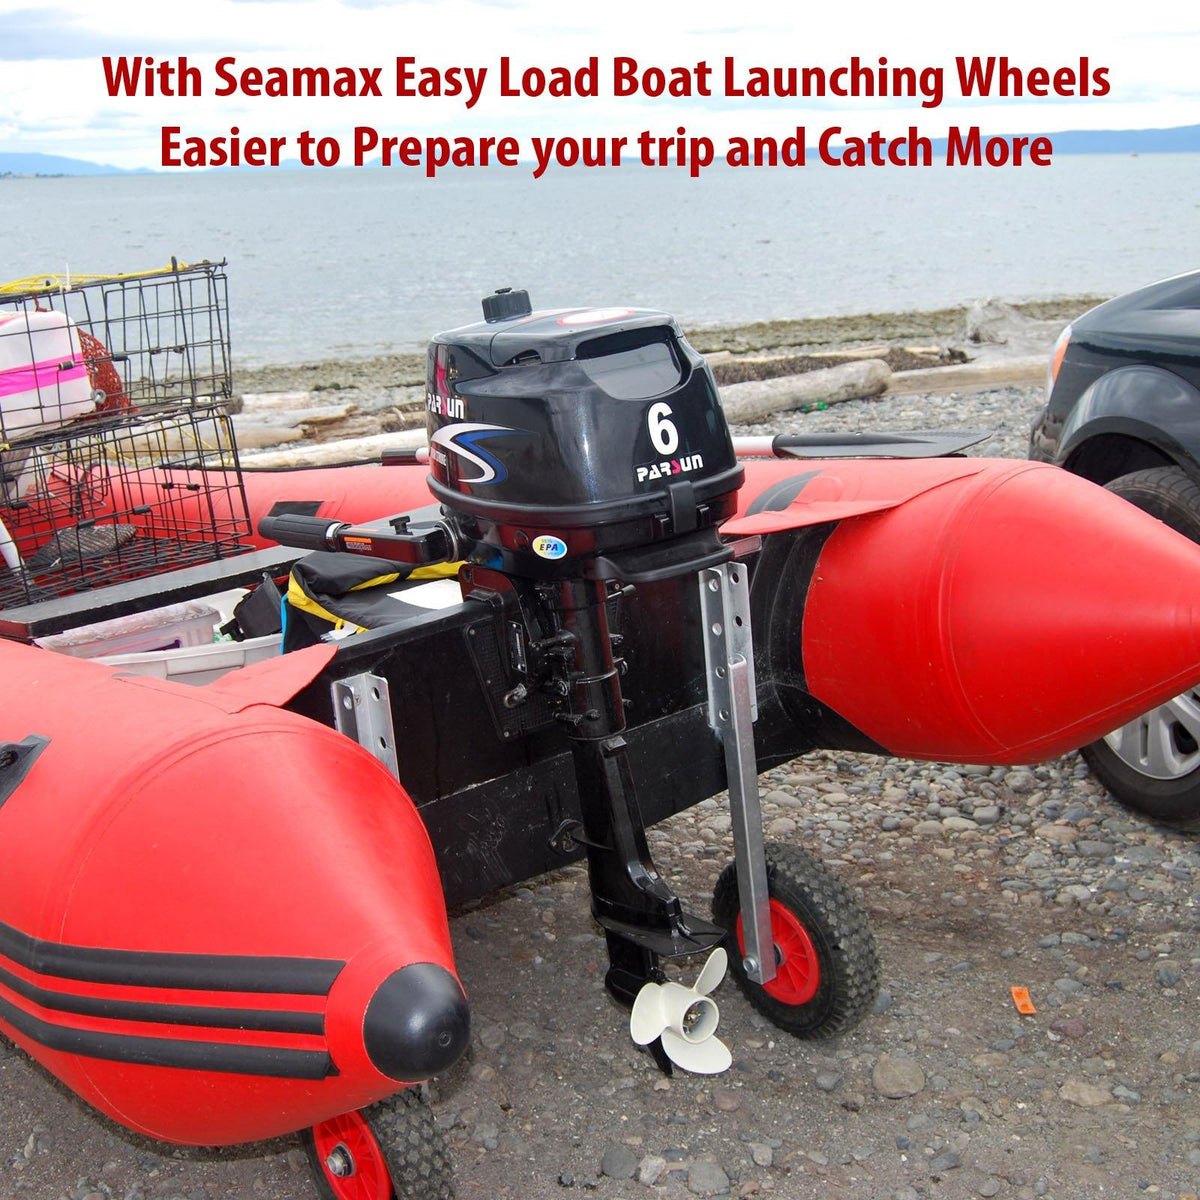 de ruedas de lanzamiento EZ Load Boat para bote inflable Seamax USA